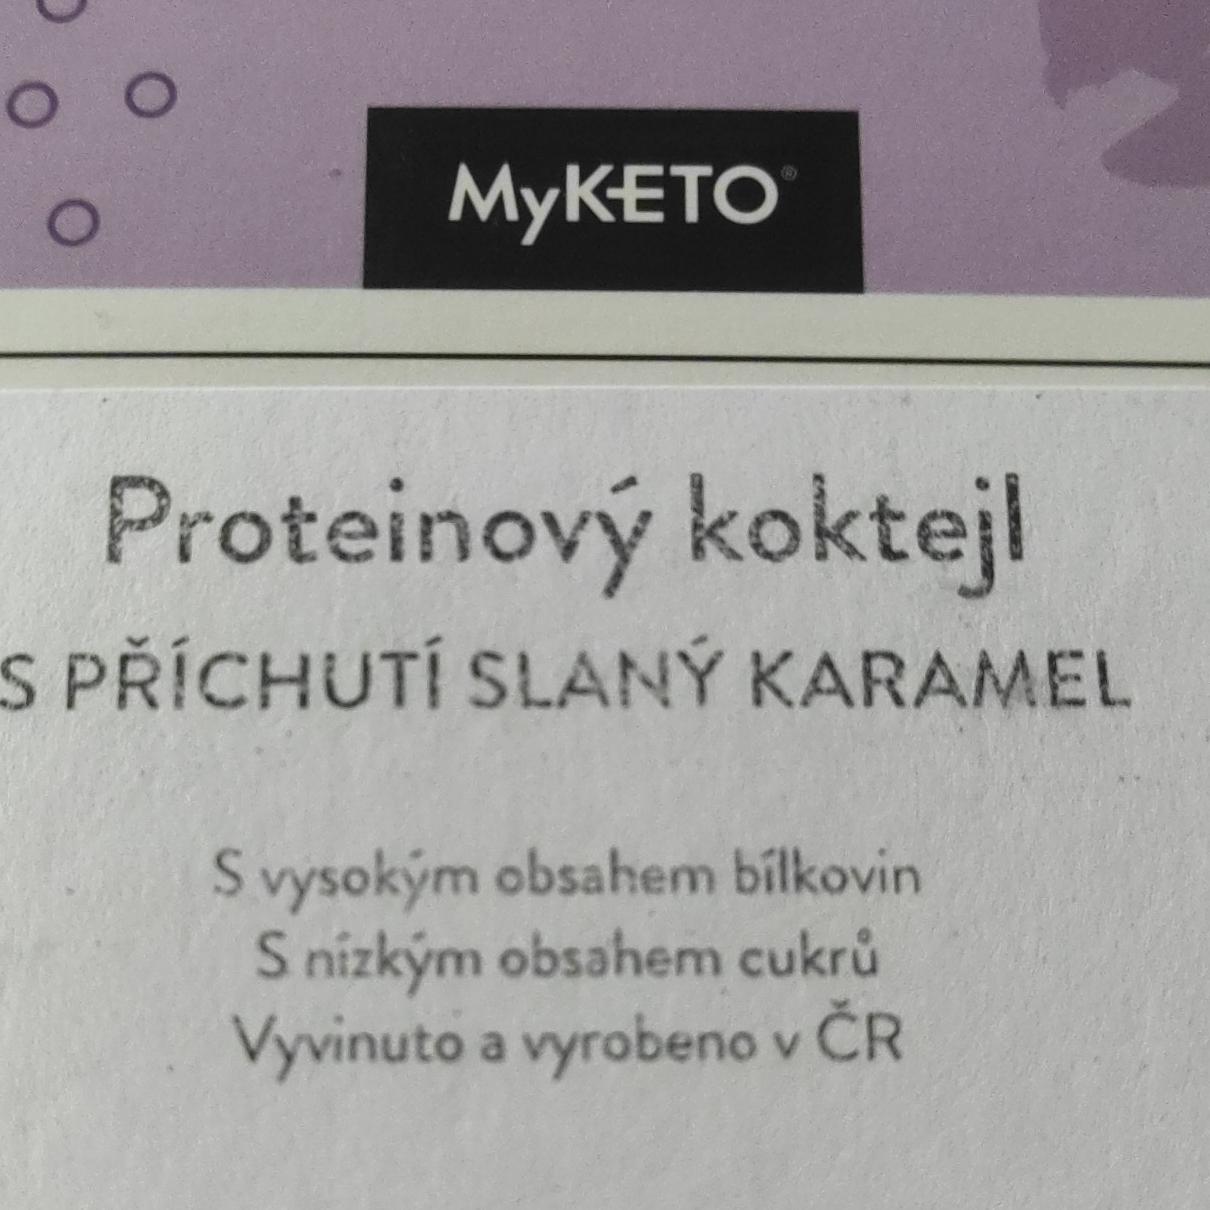 Fotografie - Proteinový koktejl s příchutí slaný karamel MyKETO